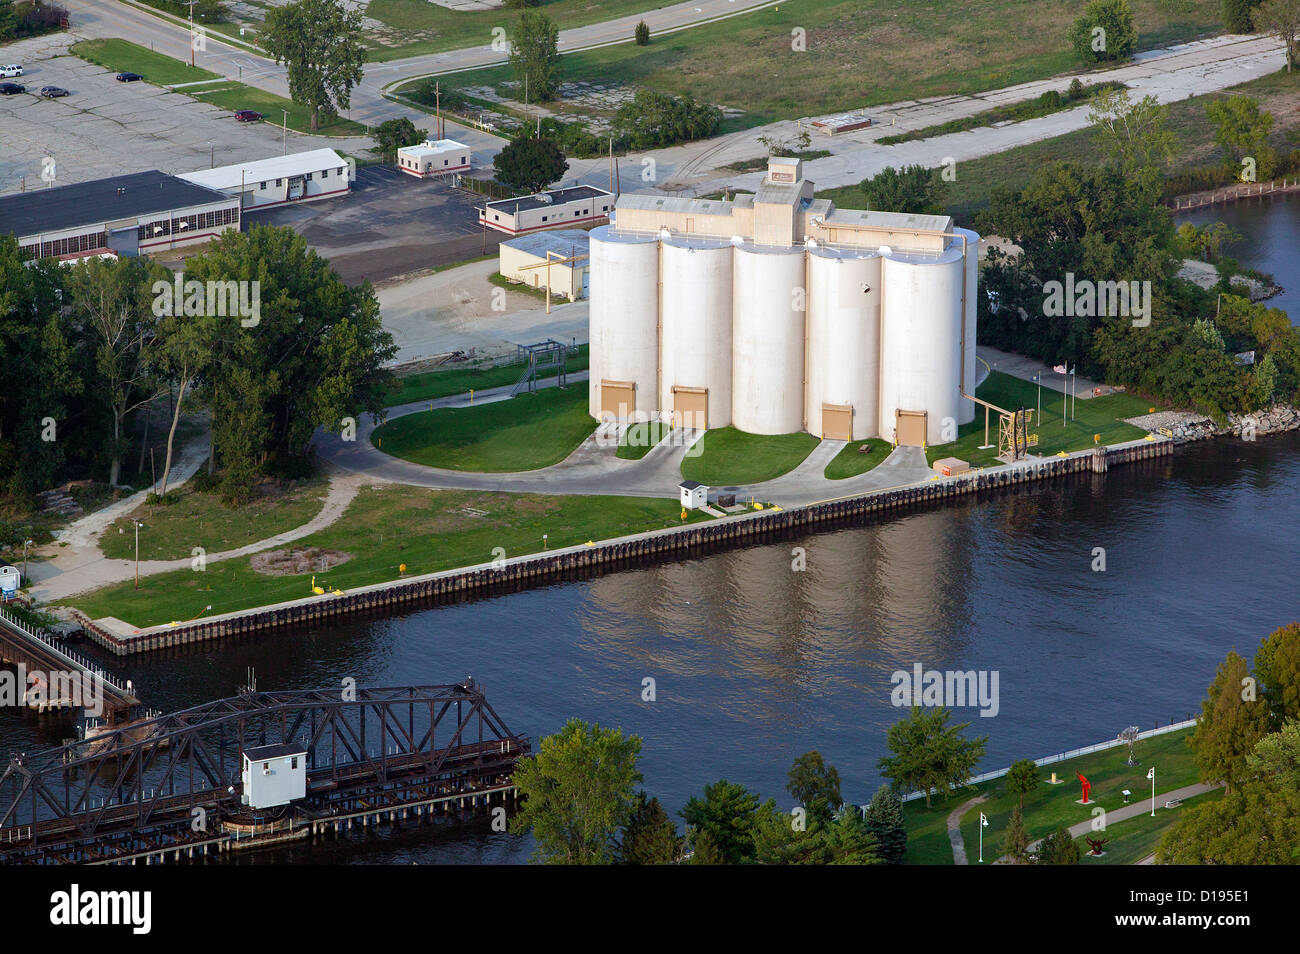 Photographie aérienne les silos du port de commerce de Benton Harbor, Michigan Banque D'Images